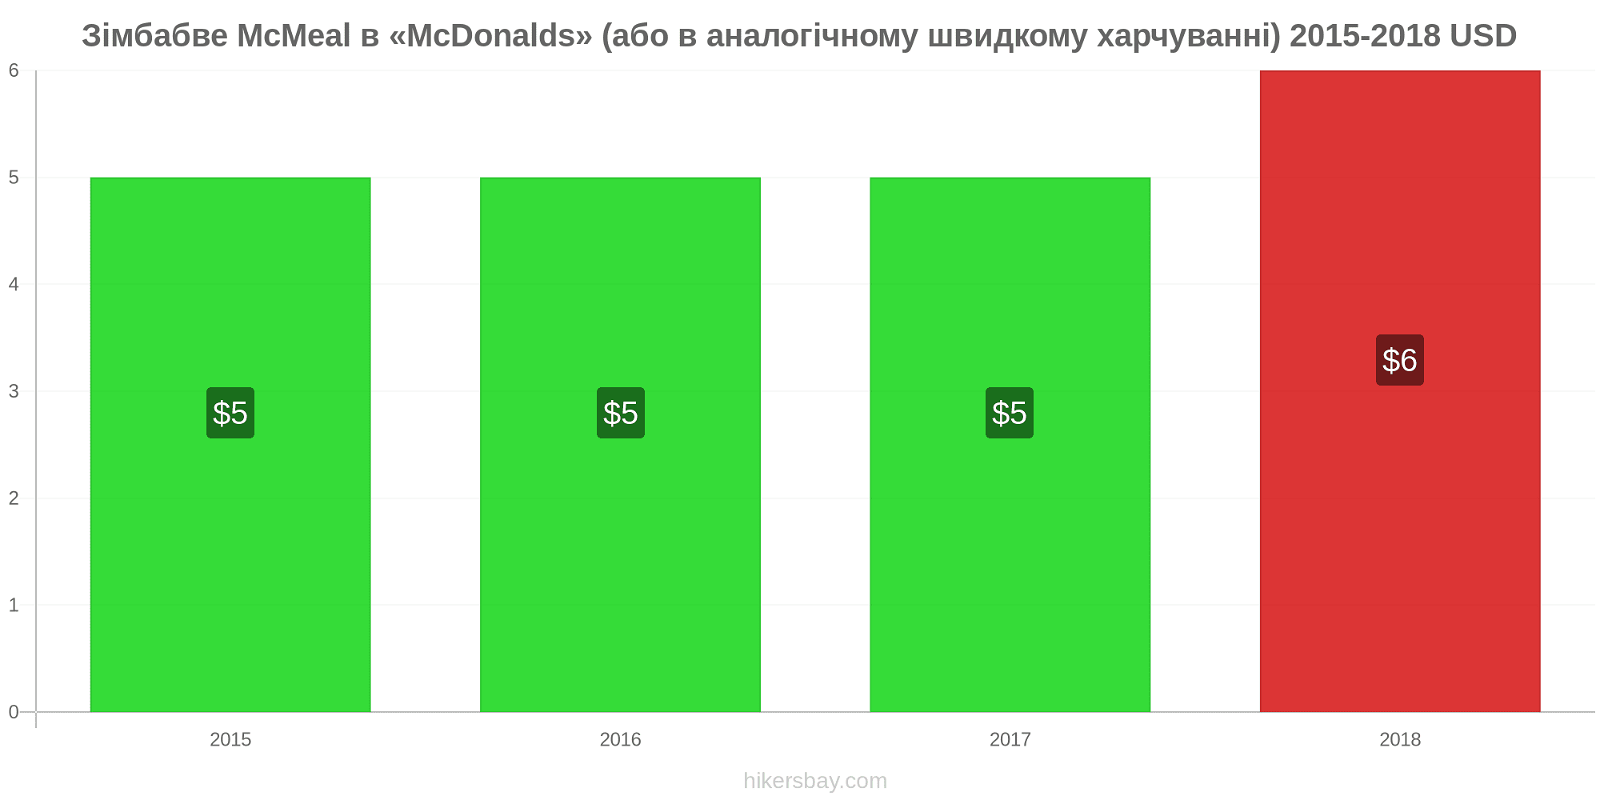 Зімбабве зміни цін McMeal в «McDonalds» (або в аналогічному швидкому харчуванні) hikersbay.com